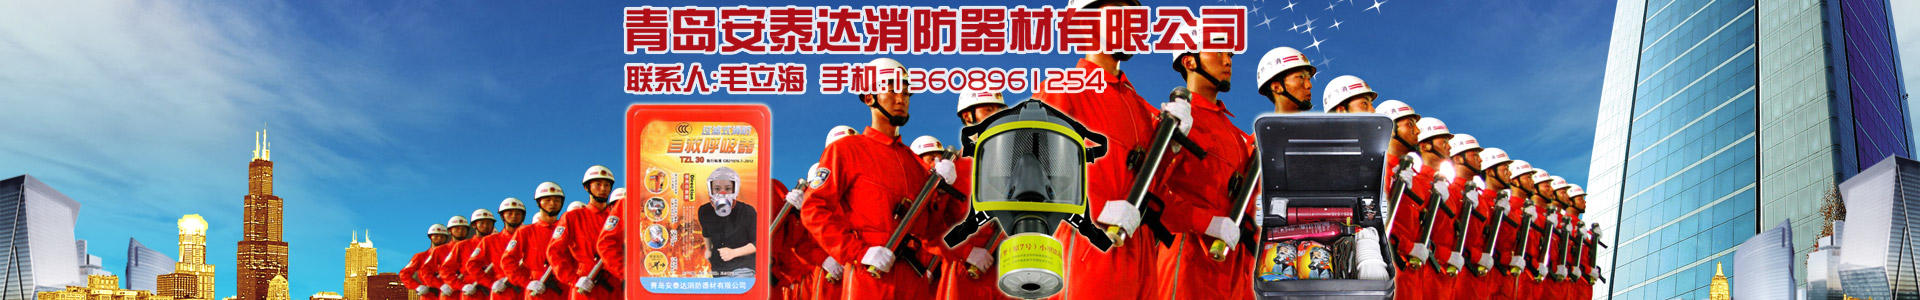 灭火器氮气灌装机-维修设备-青岛安泰达消防器材有限公司-